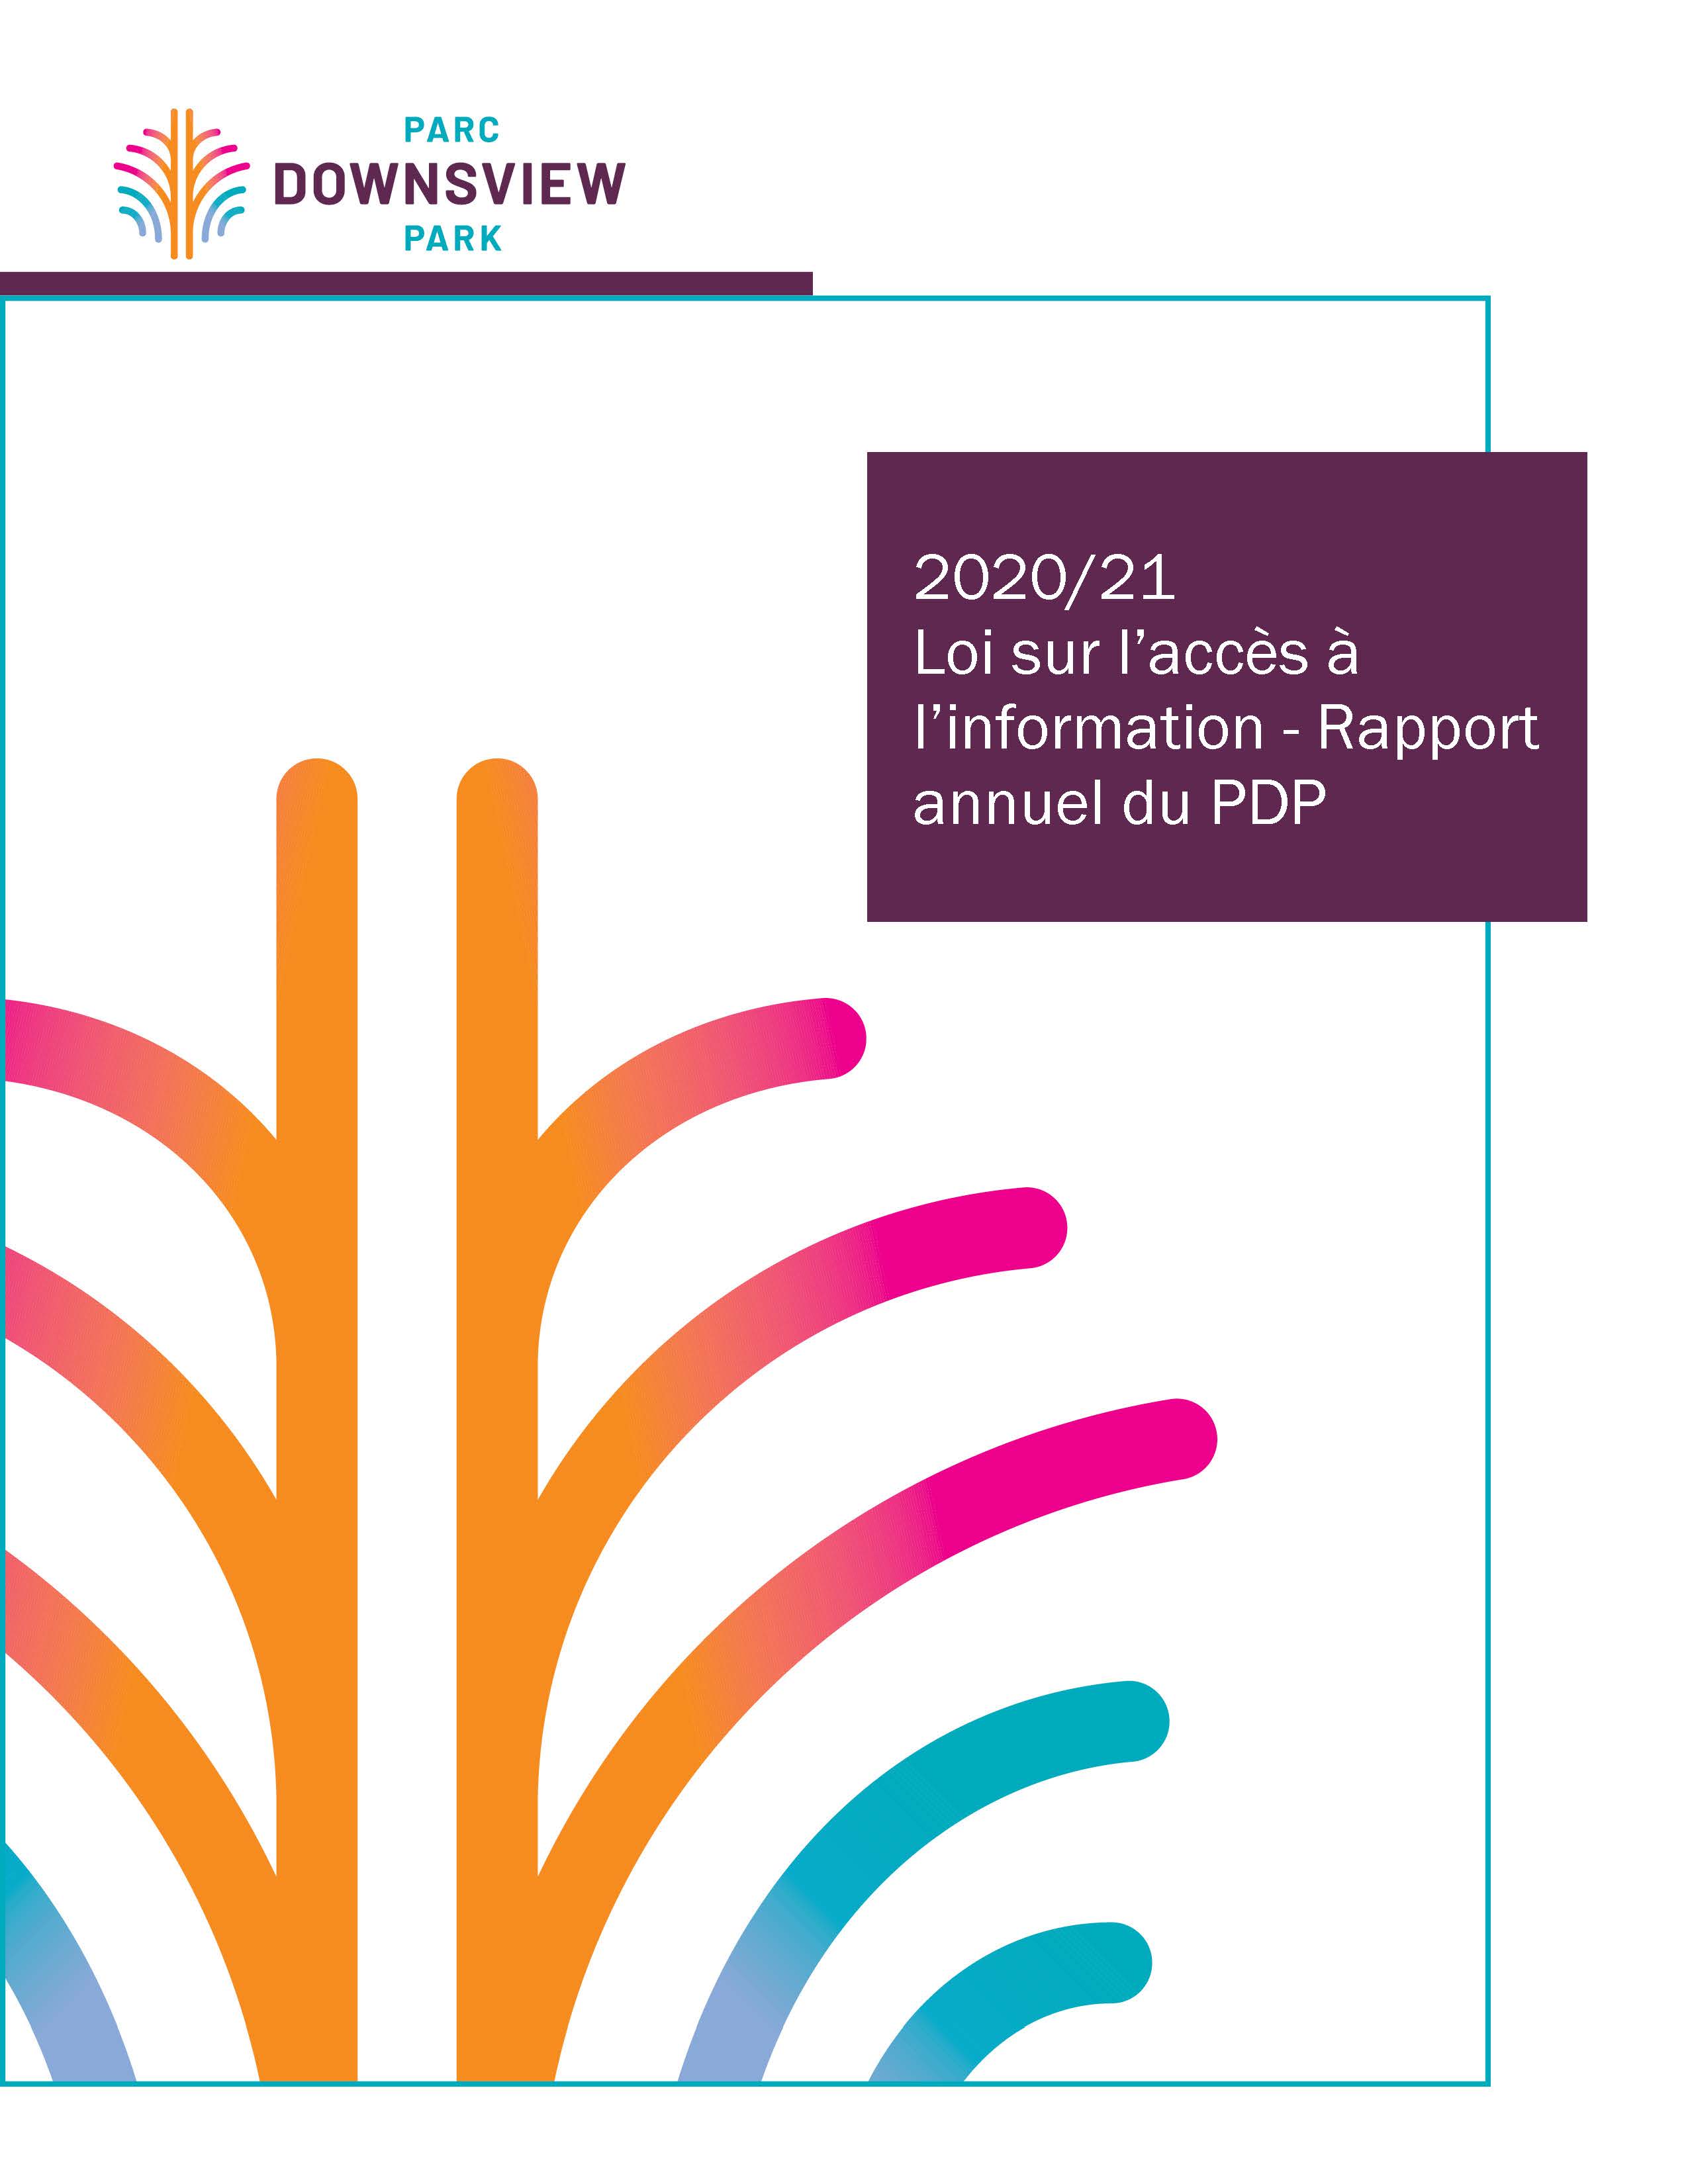 Loi sur l'accès à l'information 2020-21 - Rapport annuel du PDP